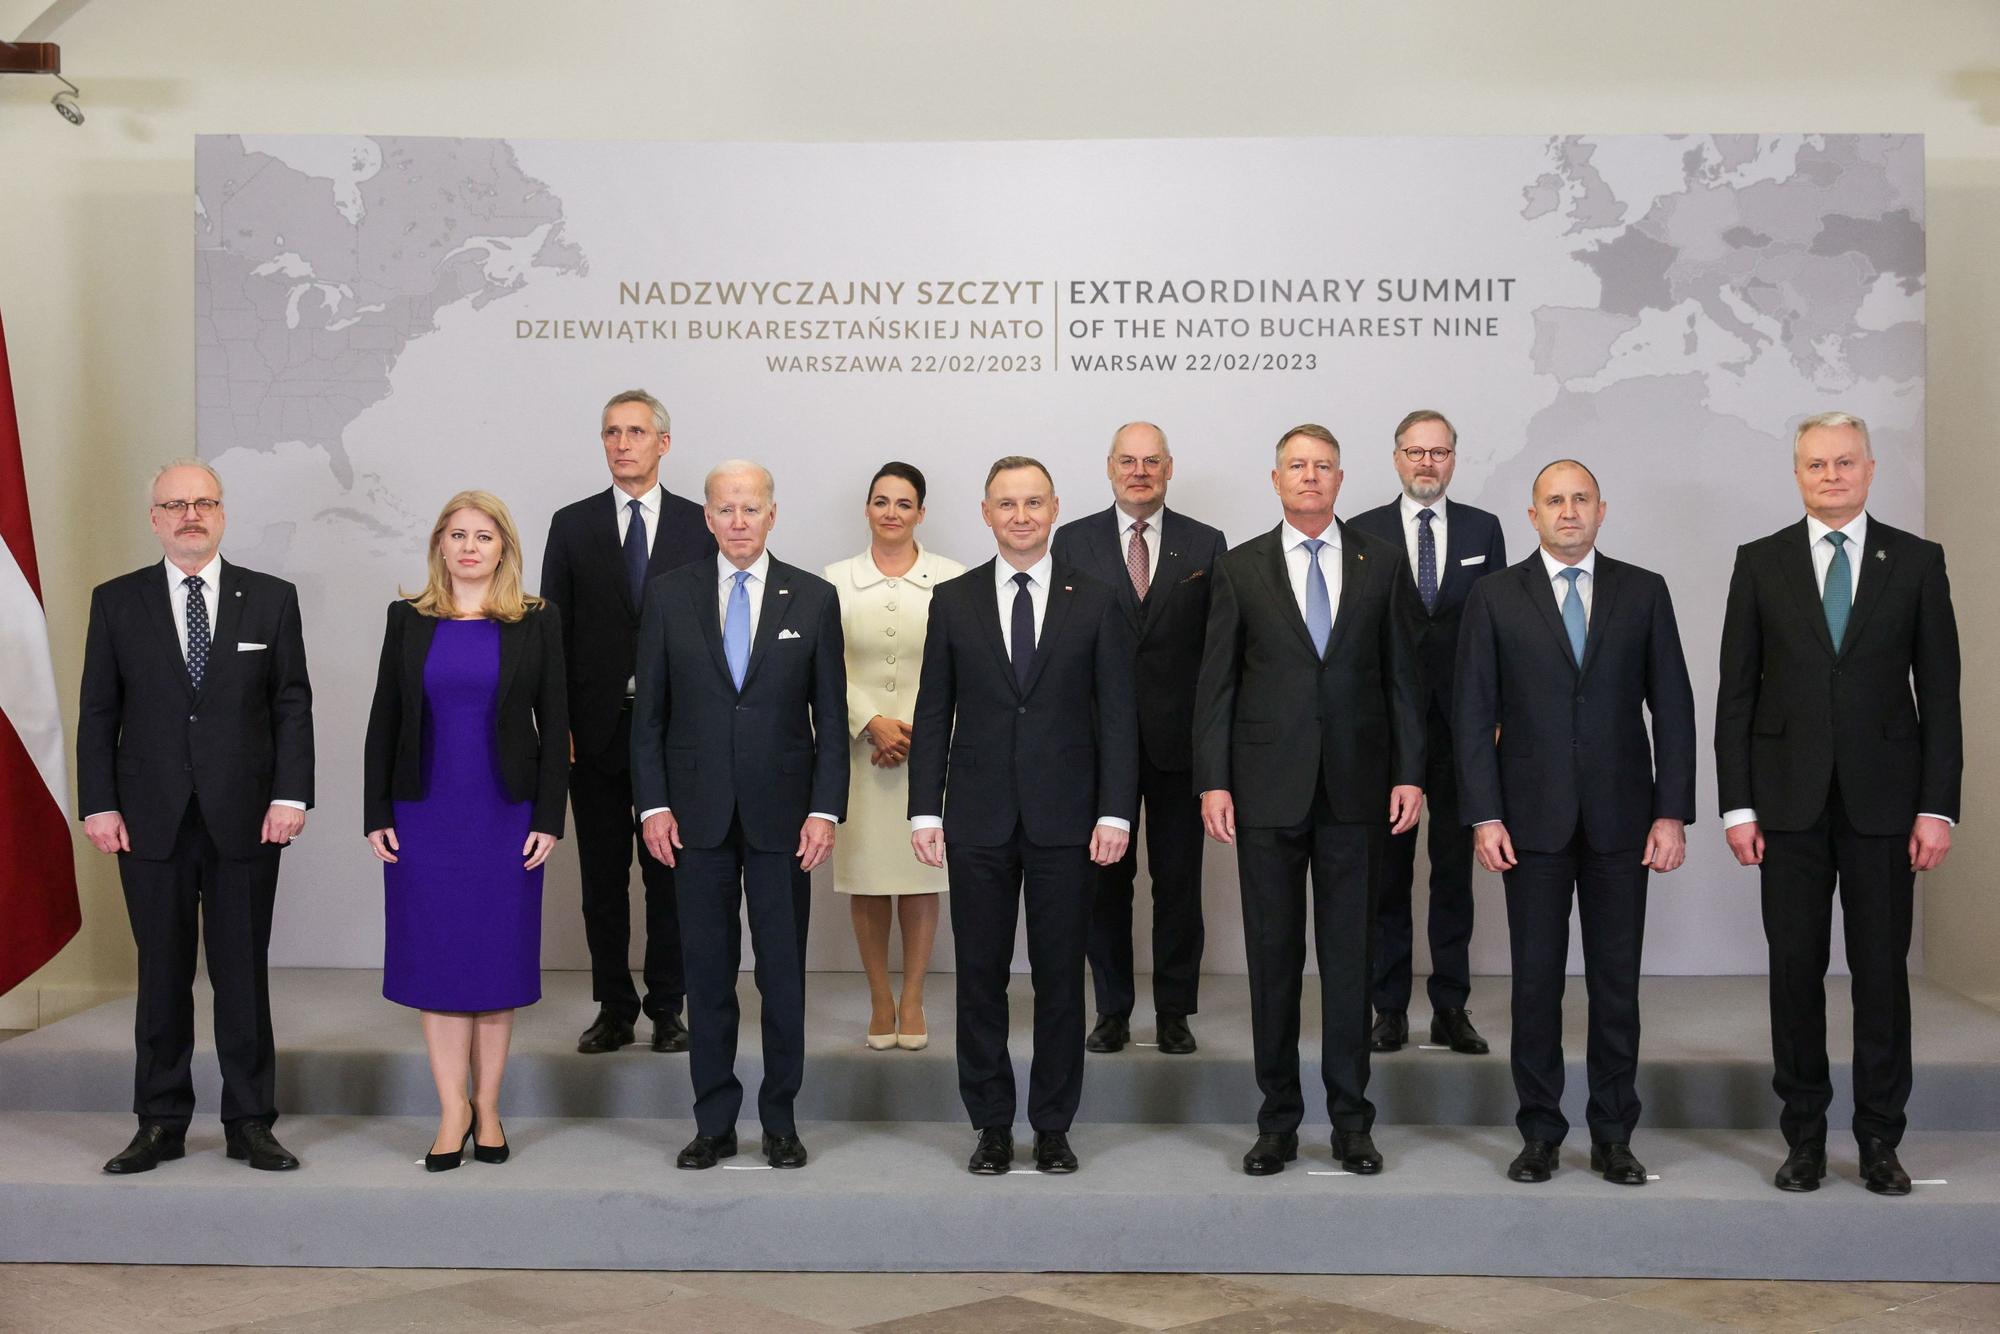 El presidente de EEUU, Joe Biden, posa con los otros participantes en la cumbre del Grupo de los Nueve de Bucarest de la OTAN, este miércoles en Varsovia.